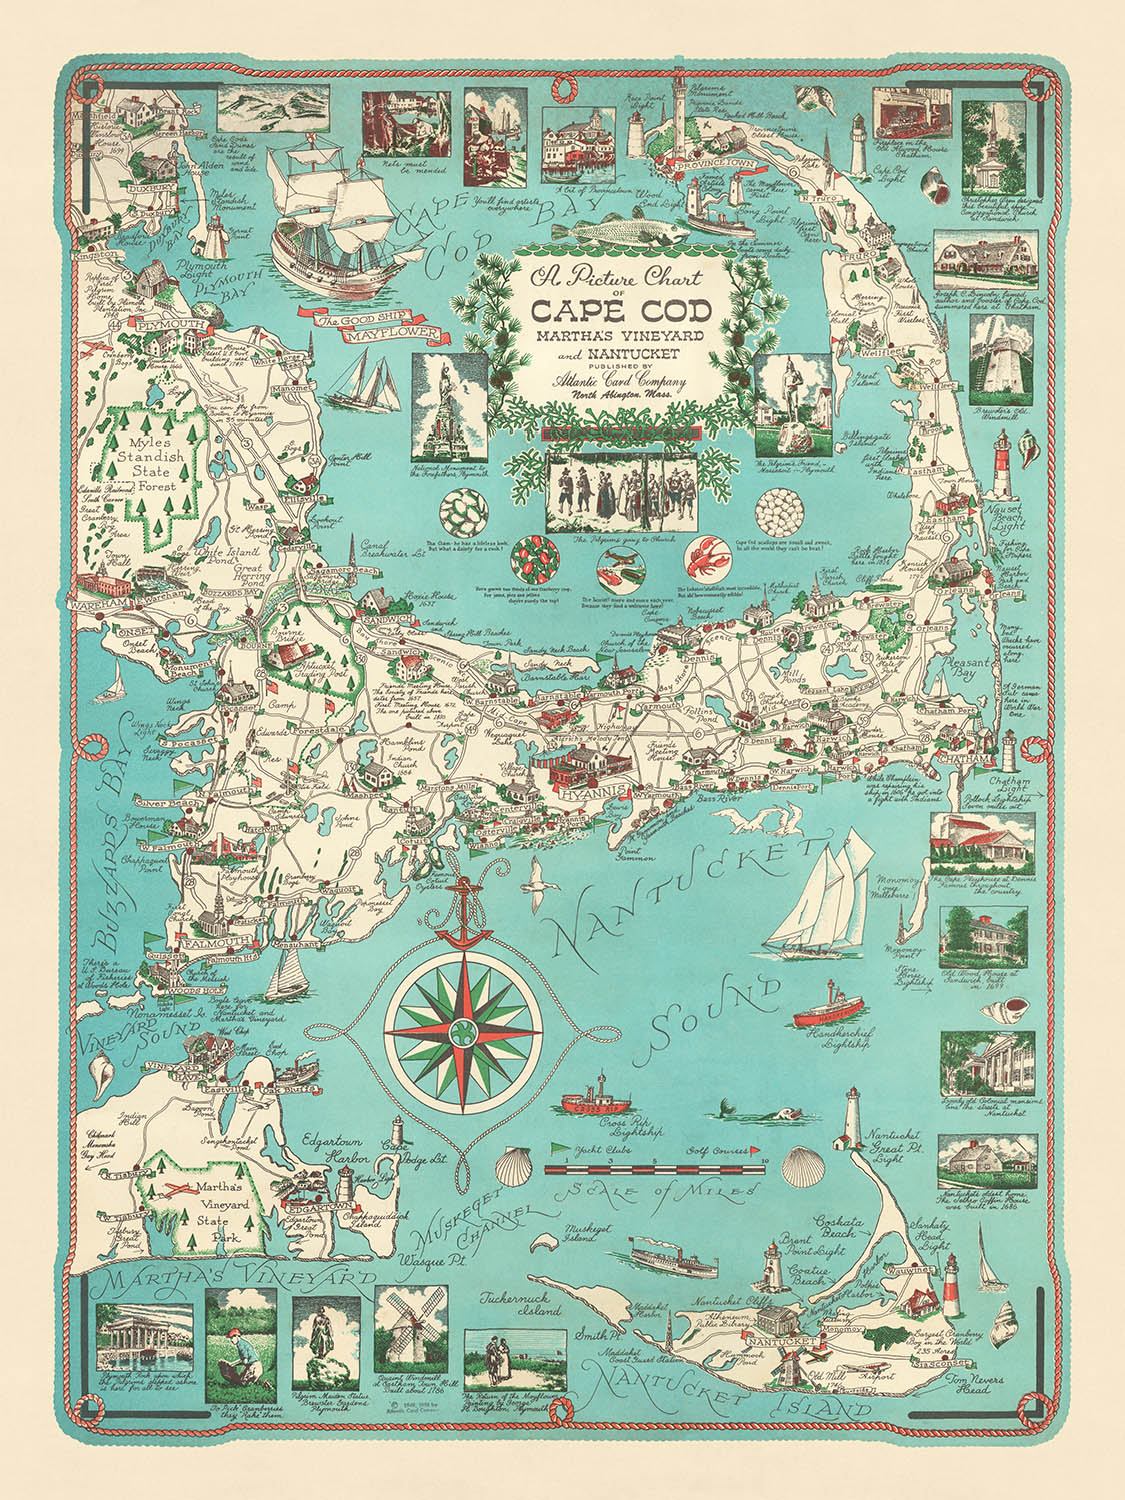 Eine Reise durch Cape Cod, Martha's Vineyard und Nantucket: Ein bildhaftes Abenteuer